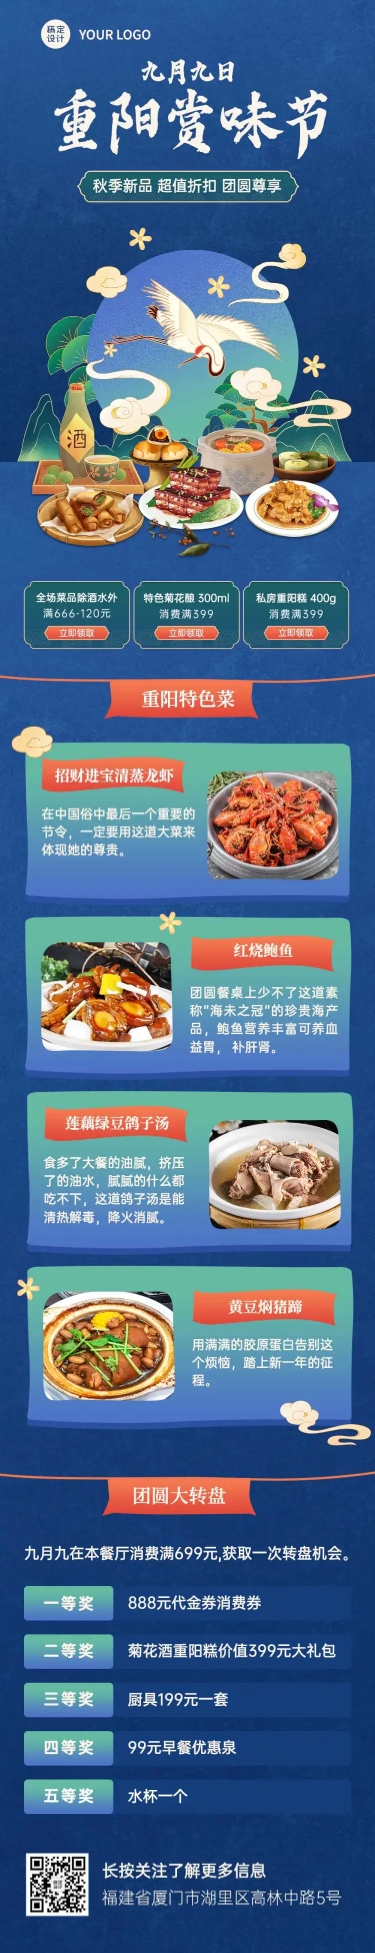 餐饮美食重阳节促销活动中国风文章长图预览效果